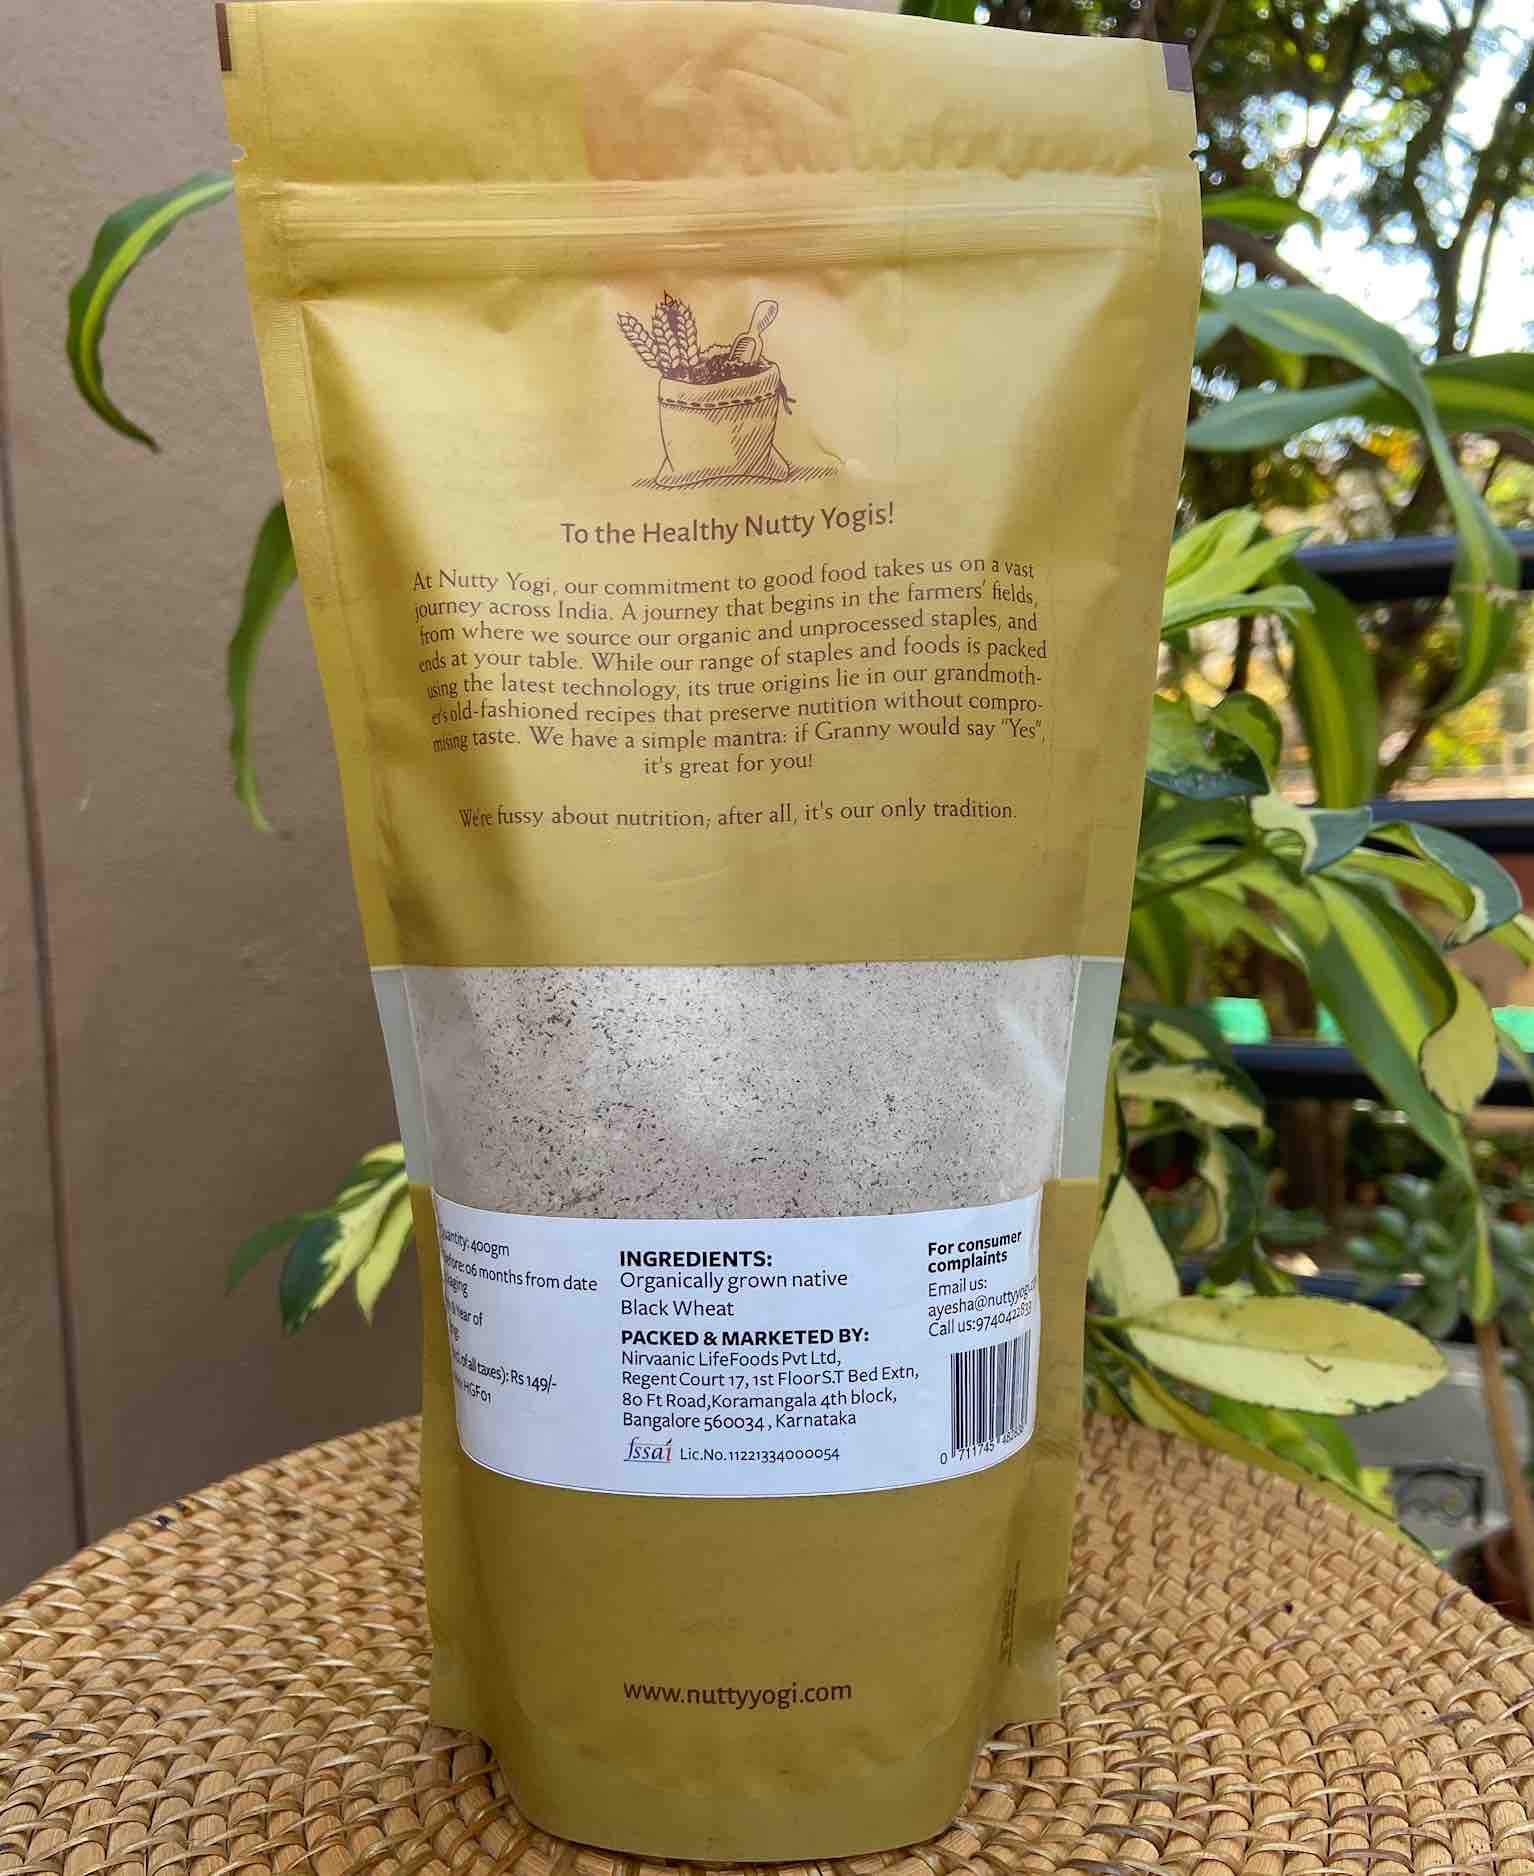 Nutty Yogi Organic Black Wheat Flour